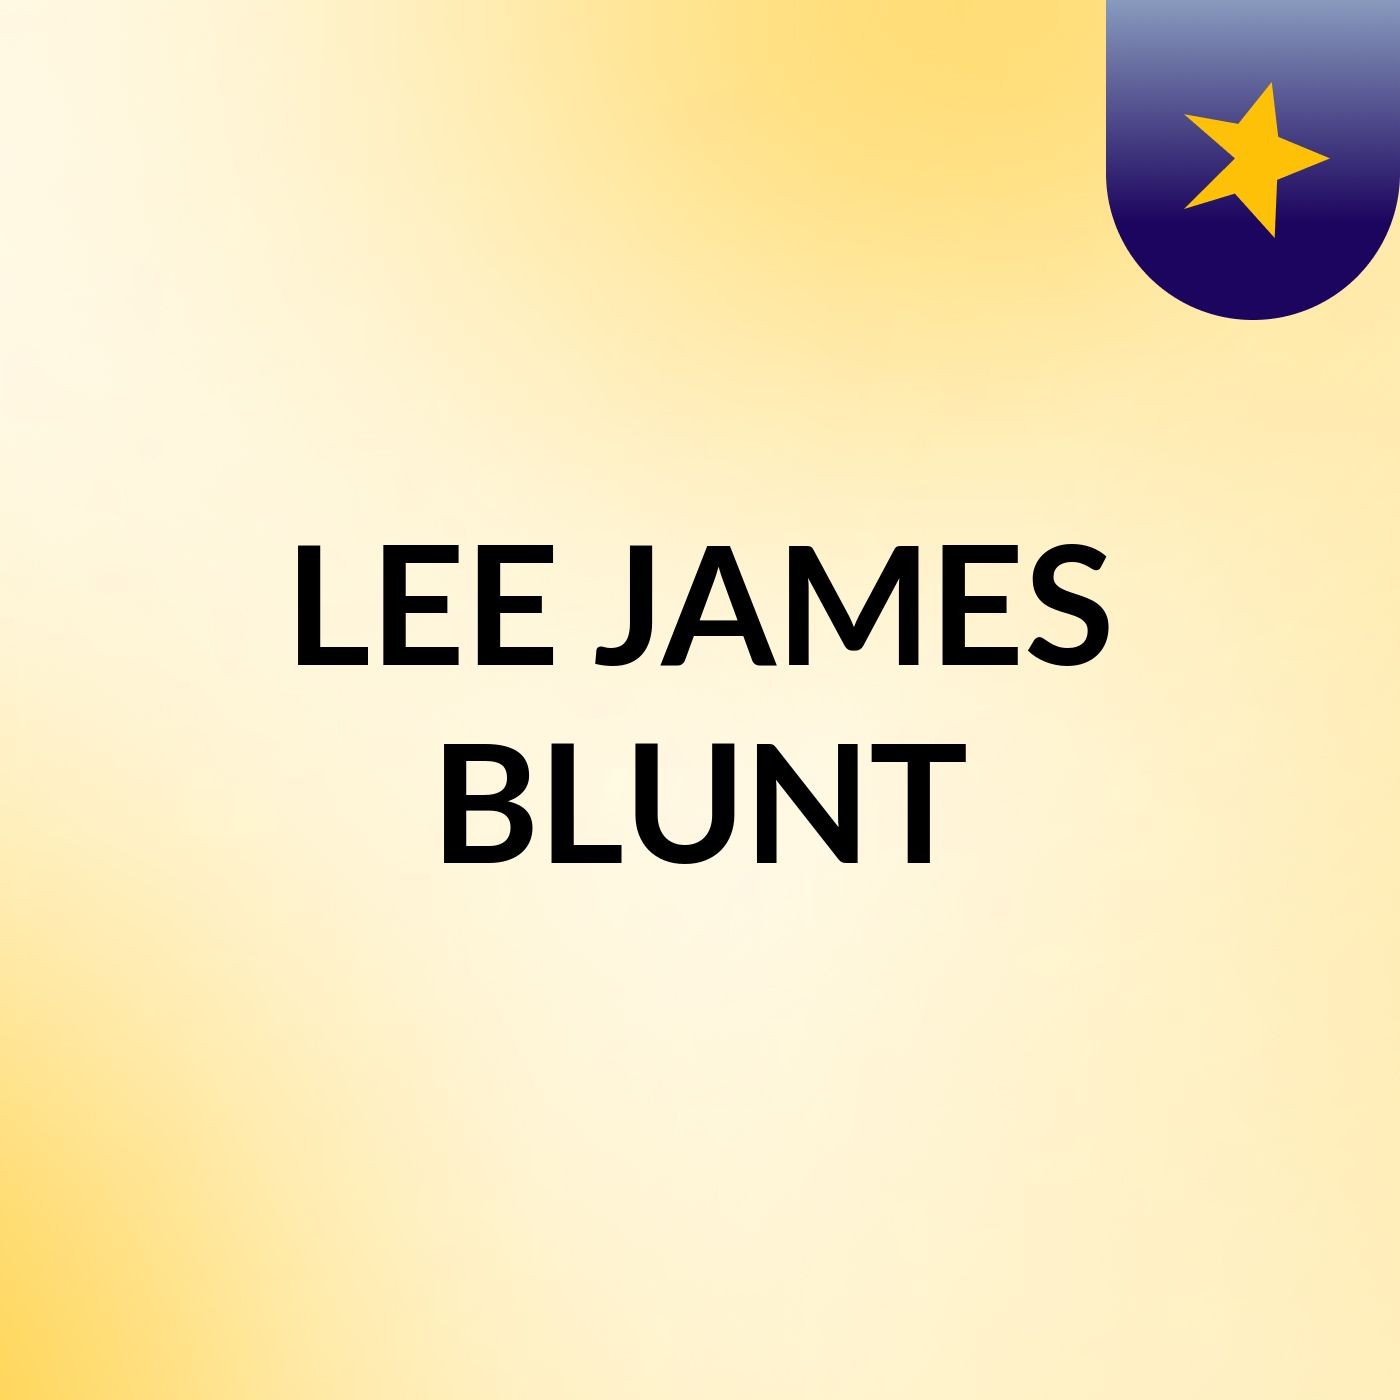 LEE JAMES BLUNT